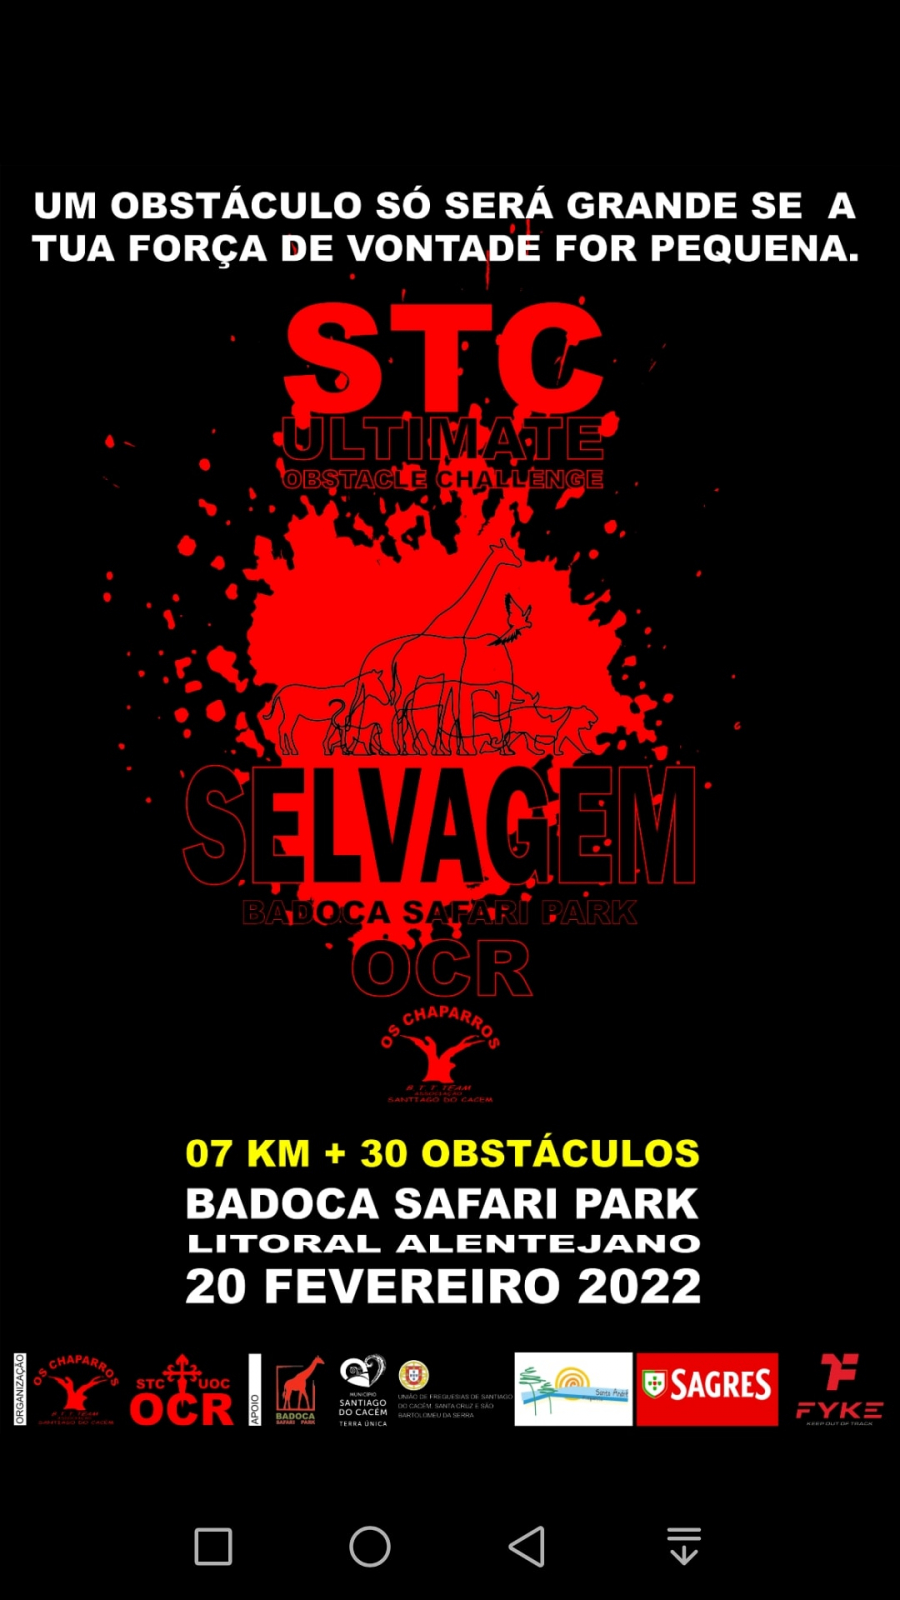 STC Ultimate Obstacle Challenge Selvagem Badoca Safari Park